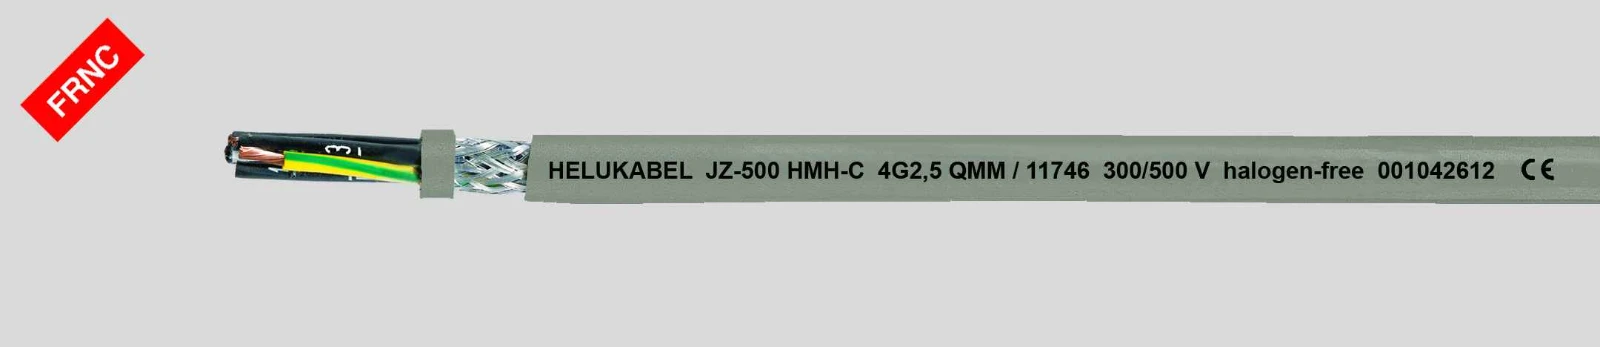 Helukabel Voedingskabel < 1 kV, voor beweegbare toepassingen JZ-500 HMH-C